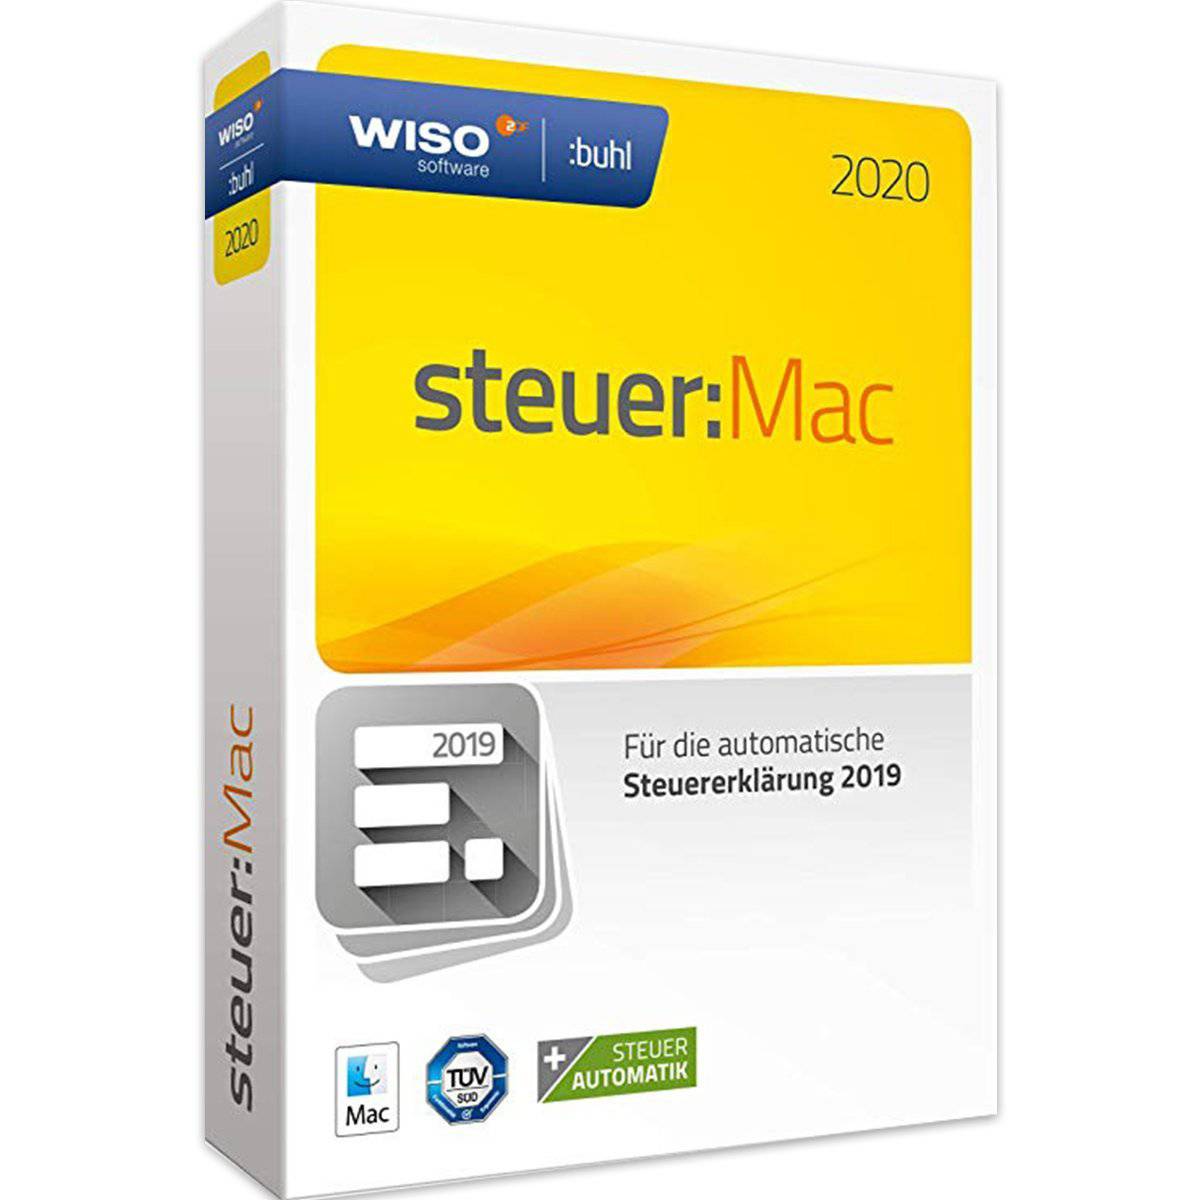 WISO Steuer: MAC 2020 - Software-Dealz.de